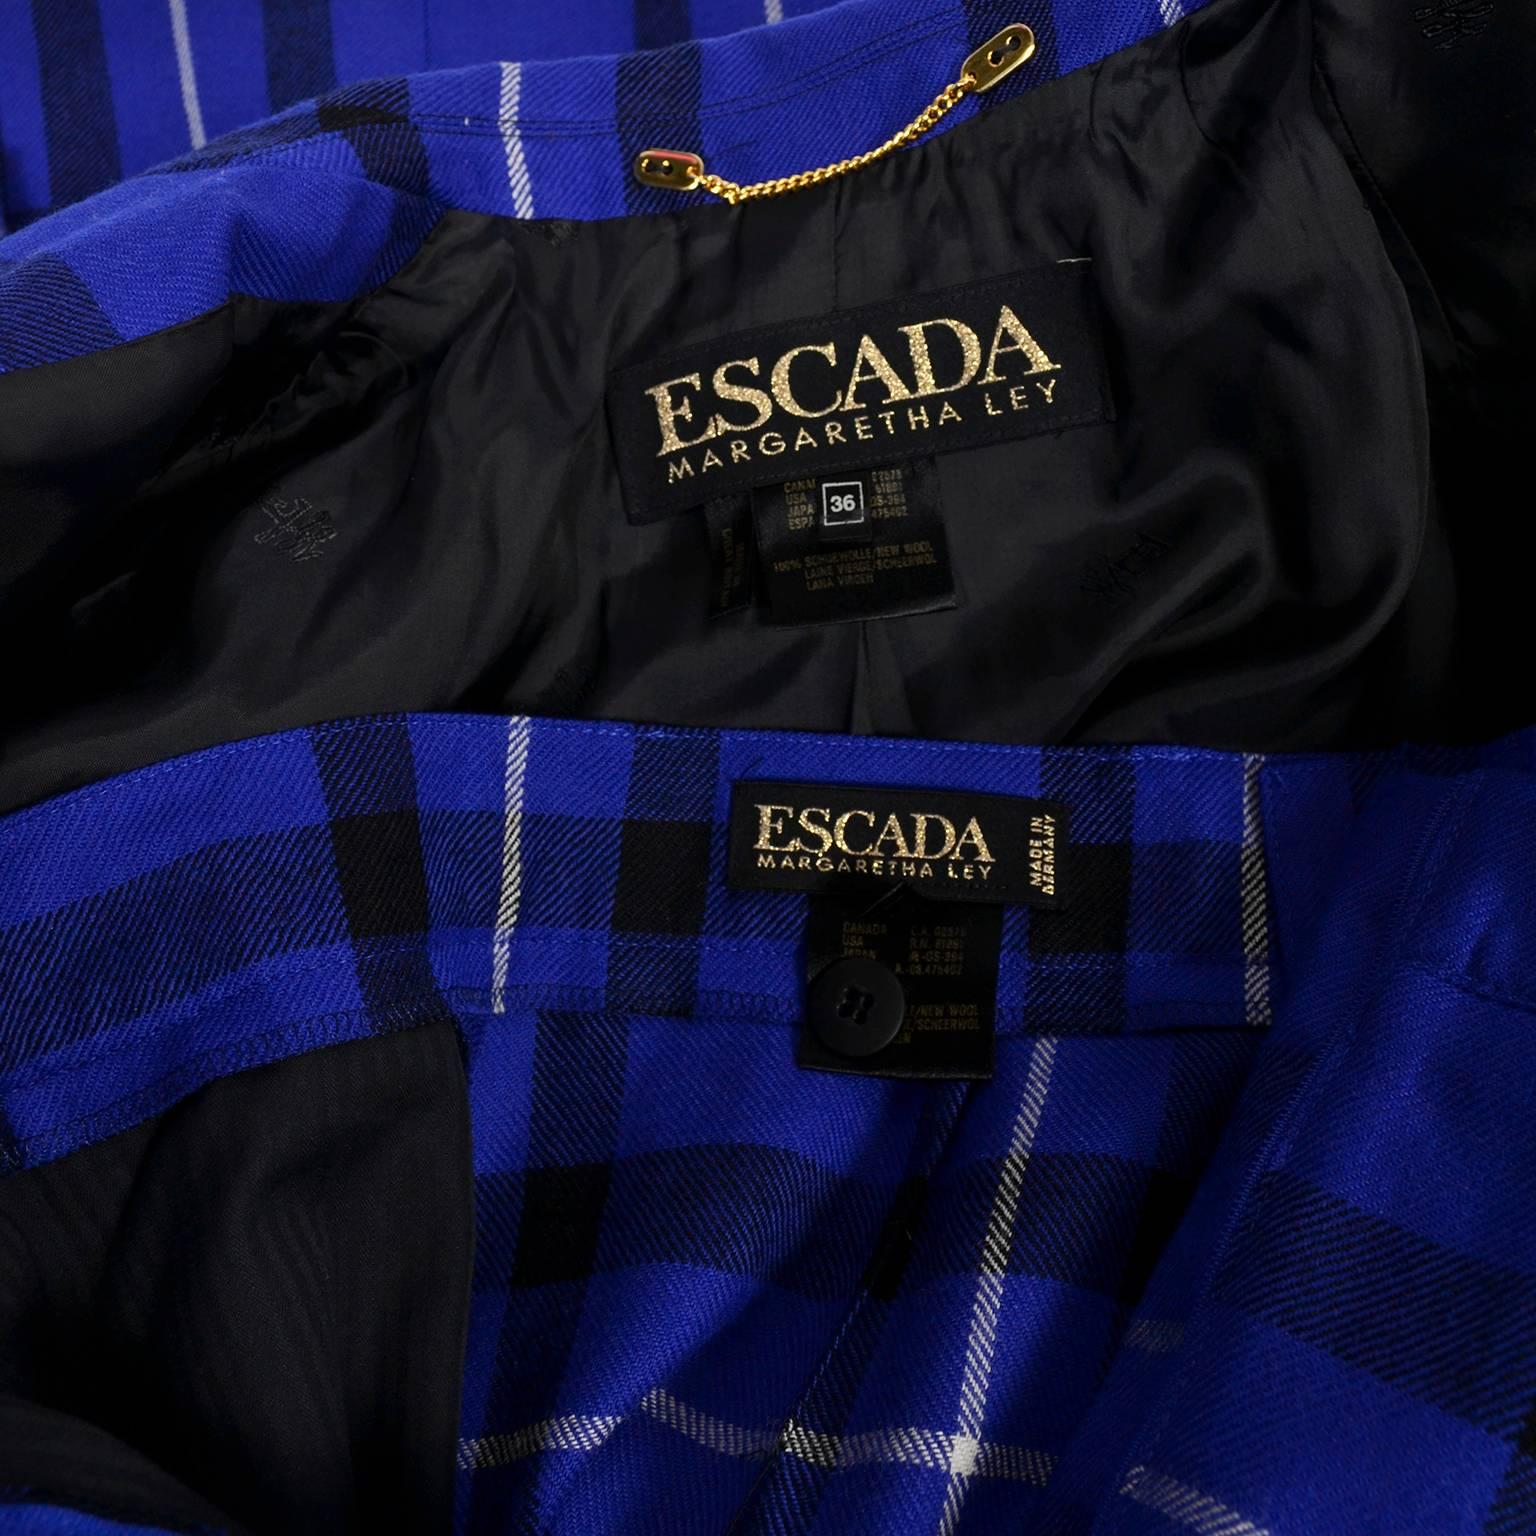 Escada Pantsuit in Blue Plaid Wool w/ Trousers & Blazer Jacket by Margaretha Ley 4